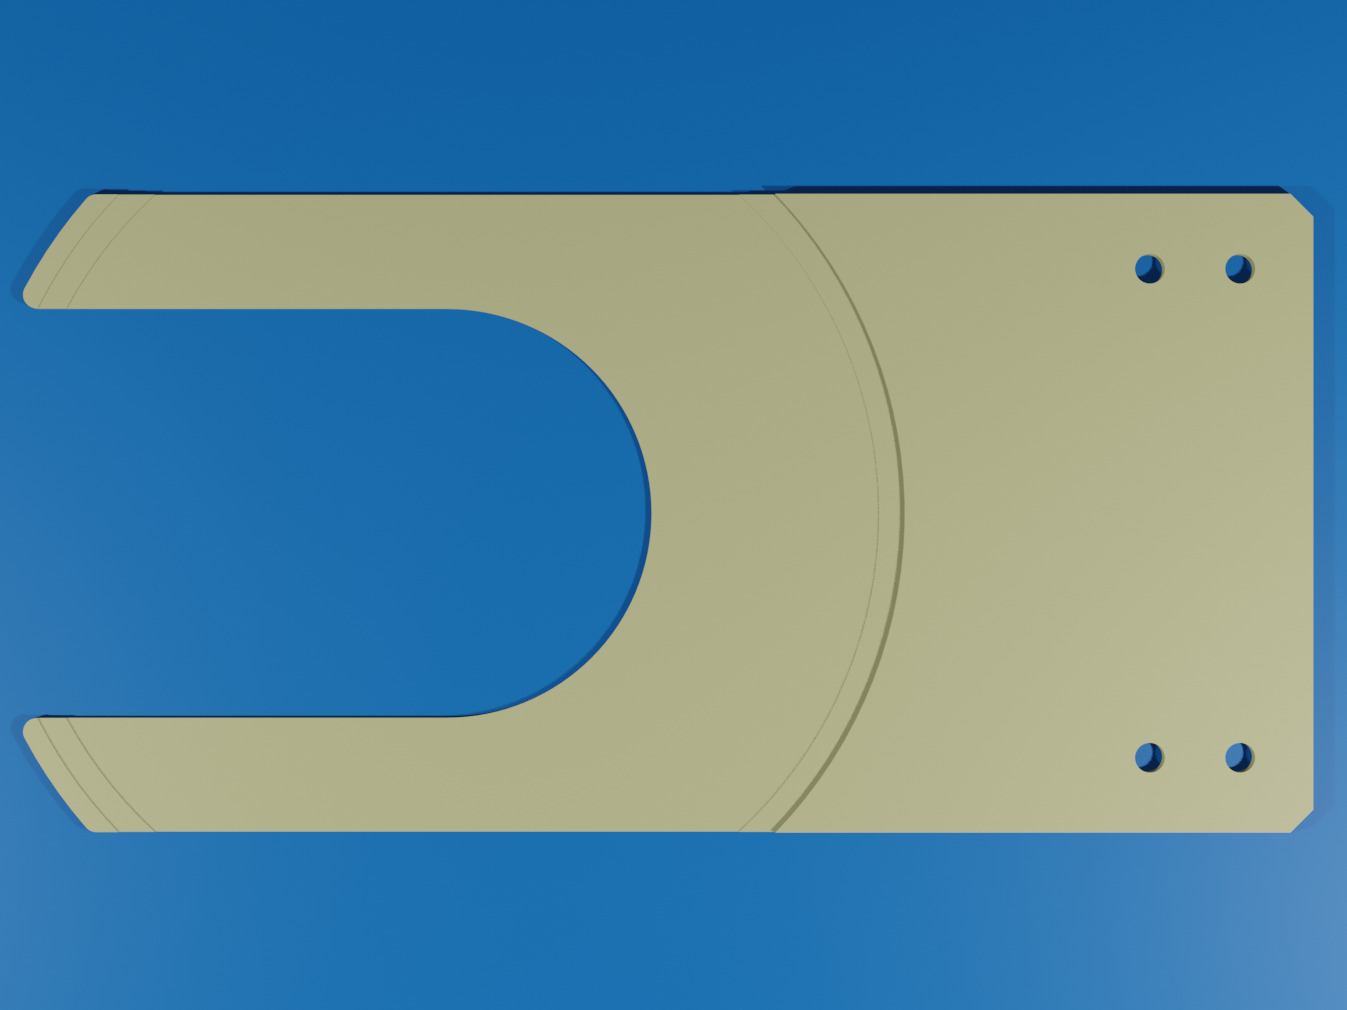 8인치 웨이퍼 반송용 트레이식 핸드(UniZac-Obon®)|세라믹스 디자인 라보